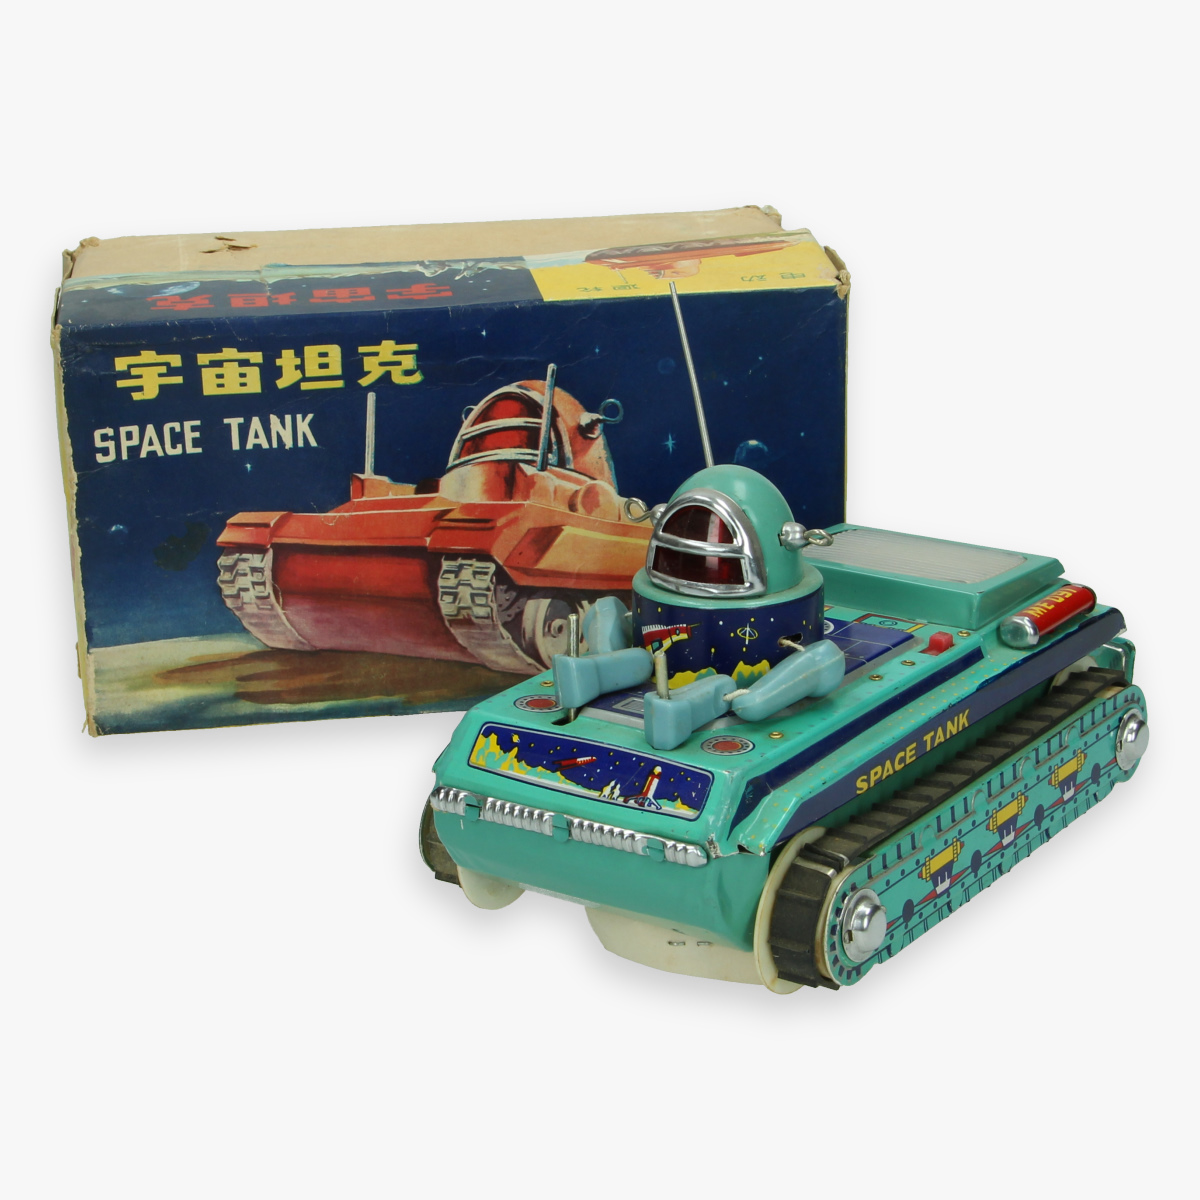 Afbeeldingen van rare red china tin toy jaren 60 me - 091 space tank in box